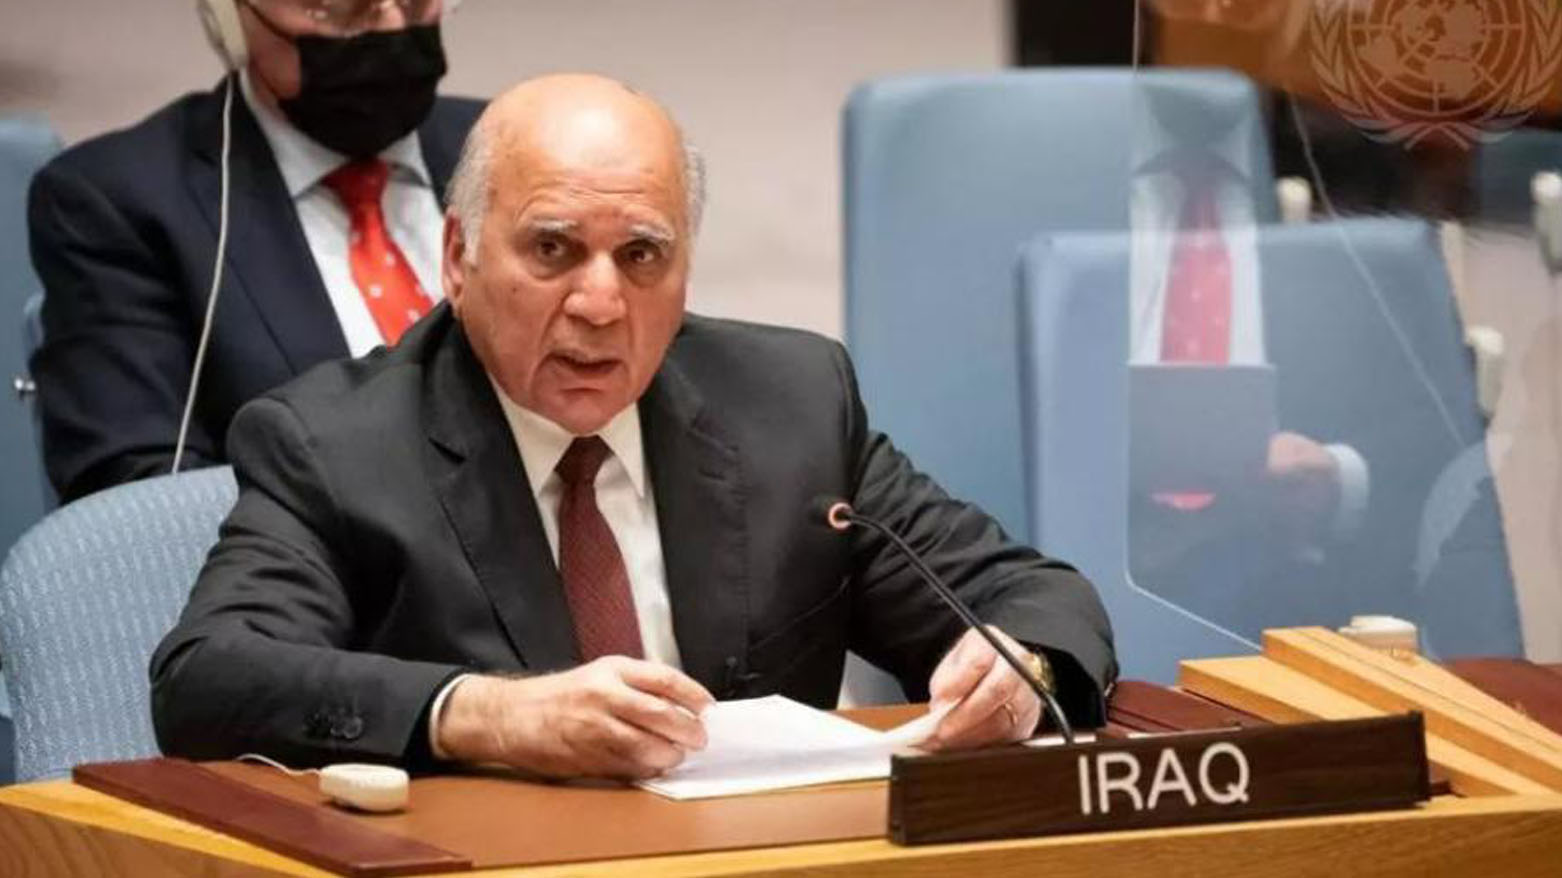 فواد حسین، وزیر امور خارجه عراق در نشست شورای امنیت سازمان ملل - عکس: آرشیو